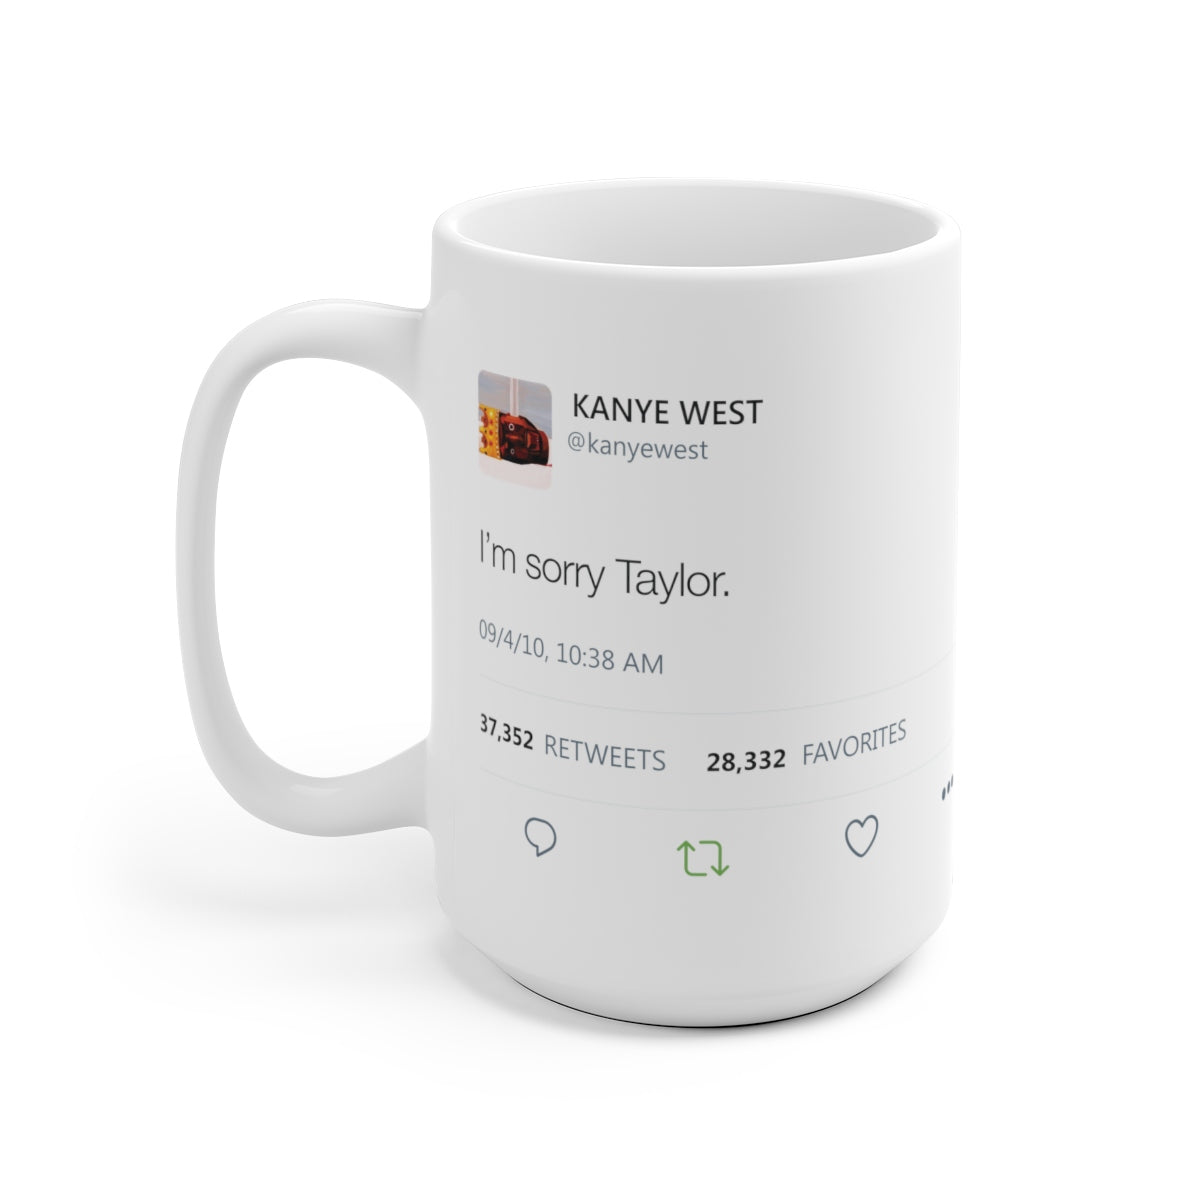 I'm sorry Taylor Kanye West Tweet Mug-Archethype